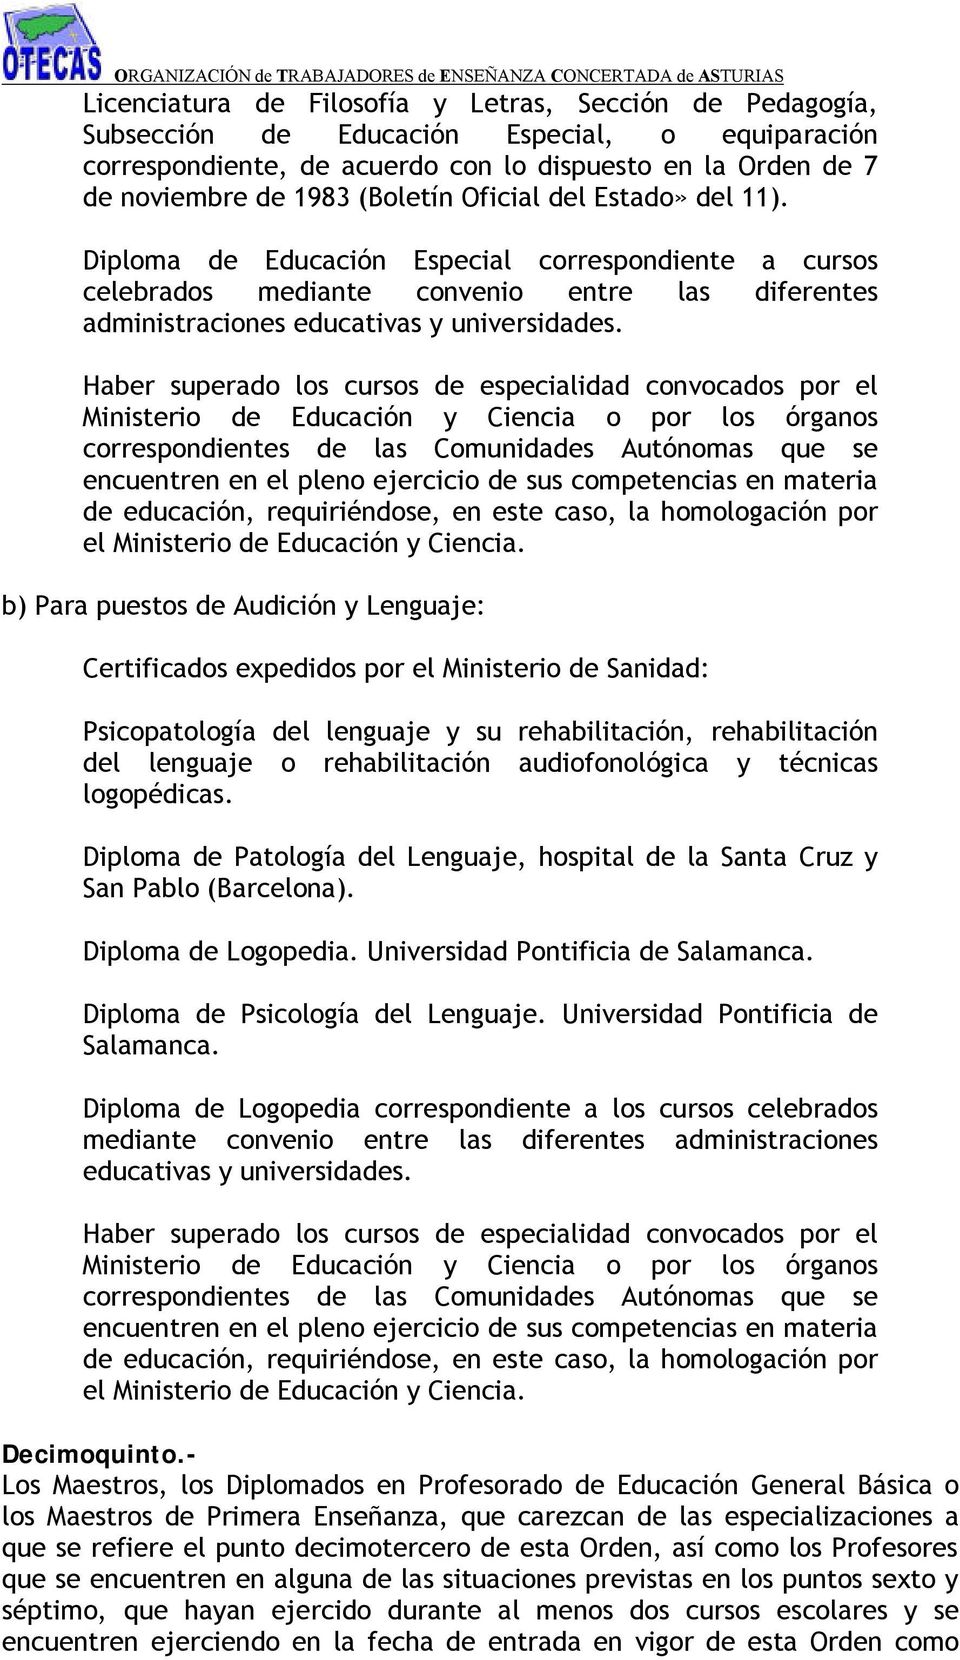 b) Para puestos de Audición y Lenguaje: Certificados expedidos por el Ministerio de Sanidad: Psicopatología del lenguaje y su rehabilitación, rehabilitación del lenguaje o rehabilitación